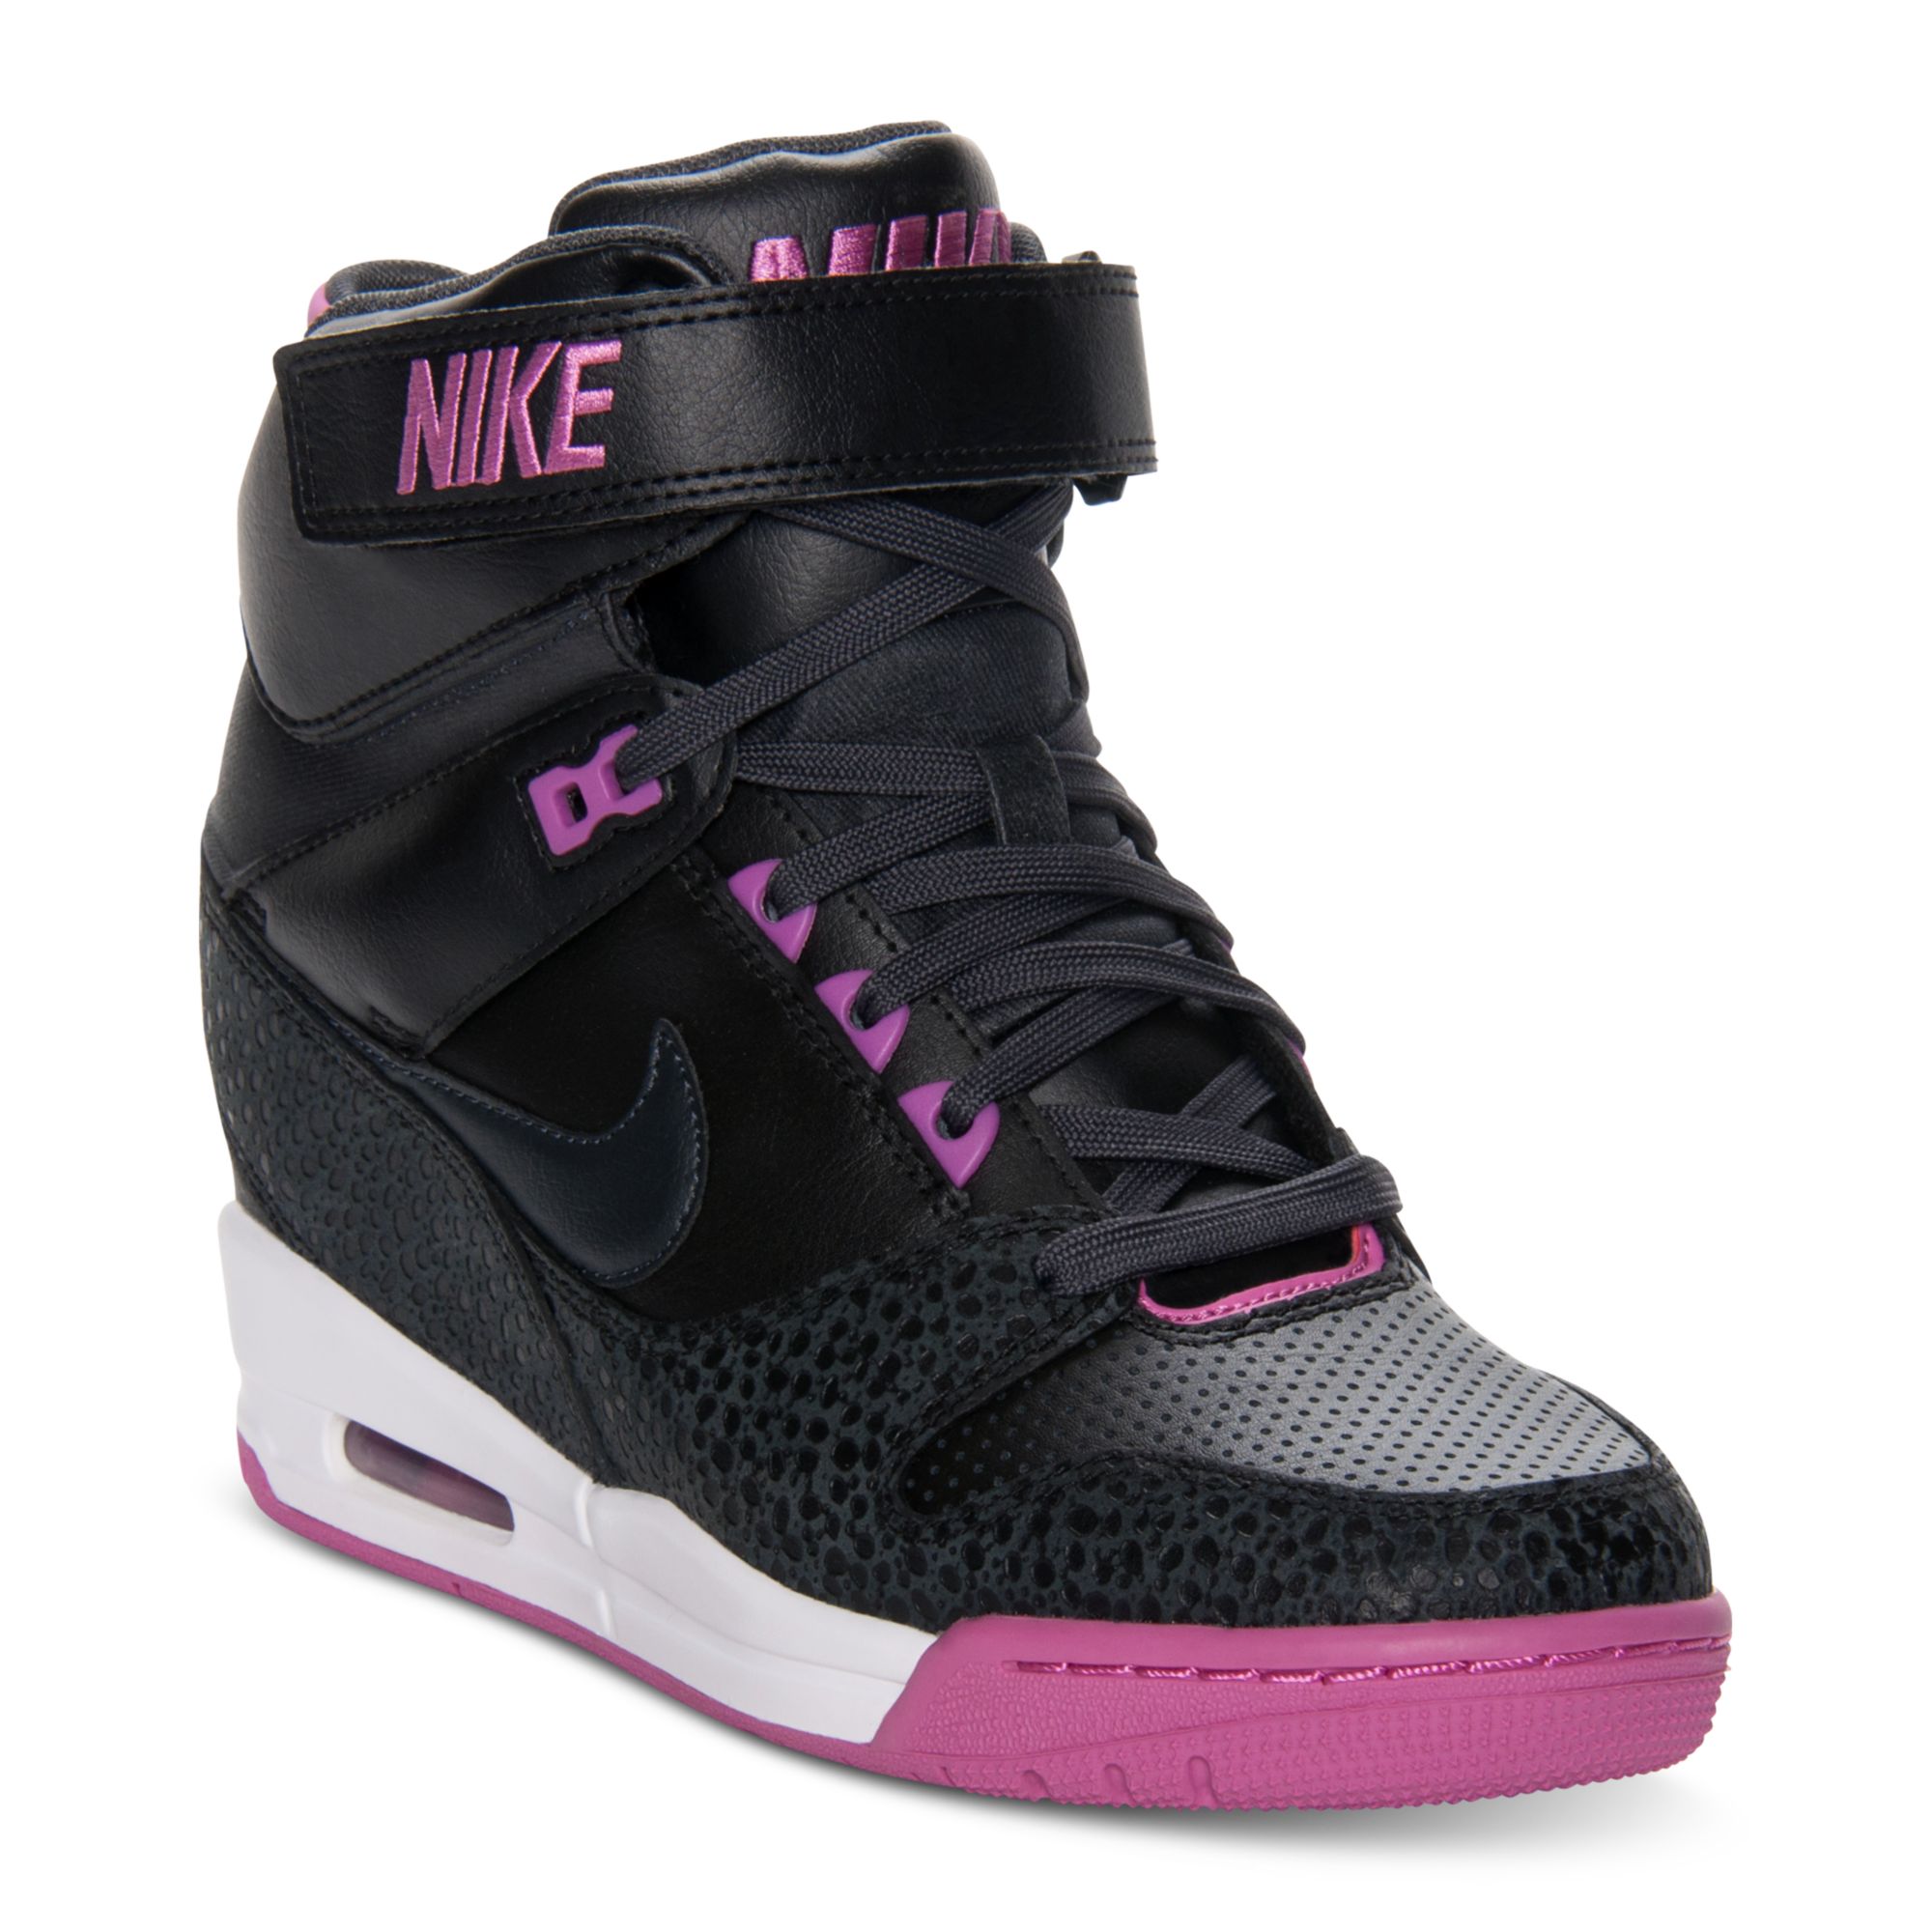 Wens Leven van Heerlijk Nike Air Revolution Sky Hi Casual Wedge Sneakers in Black | Lyst